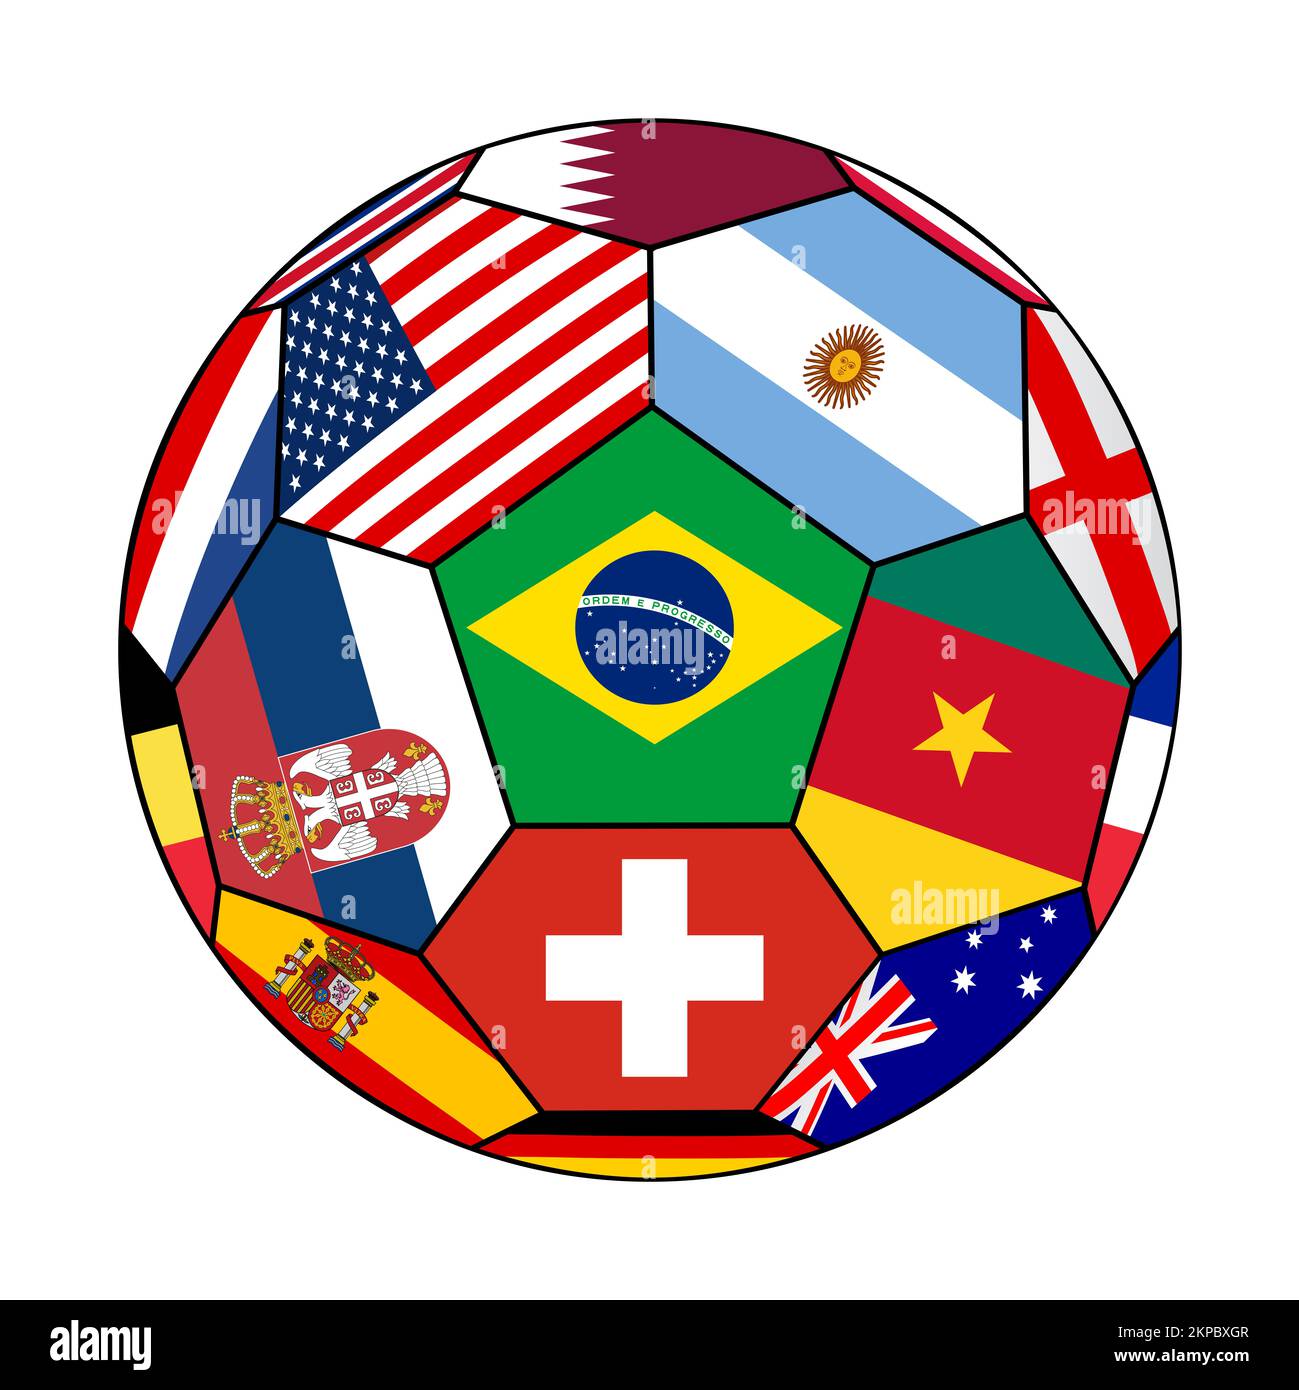 Pallone da calcio con varie bandiere - Qatar 2022 Foto Stock